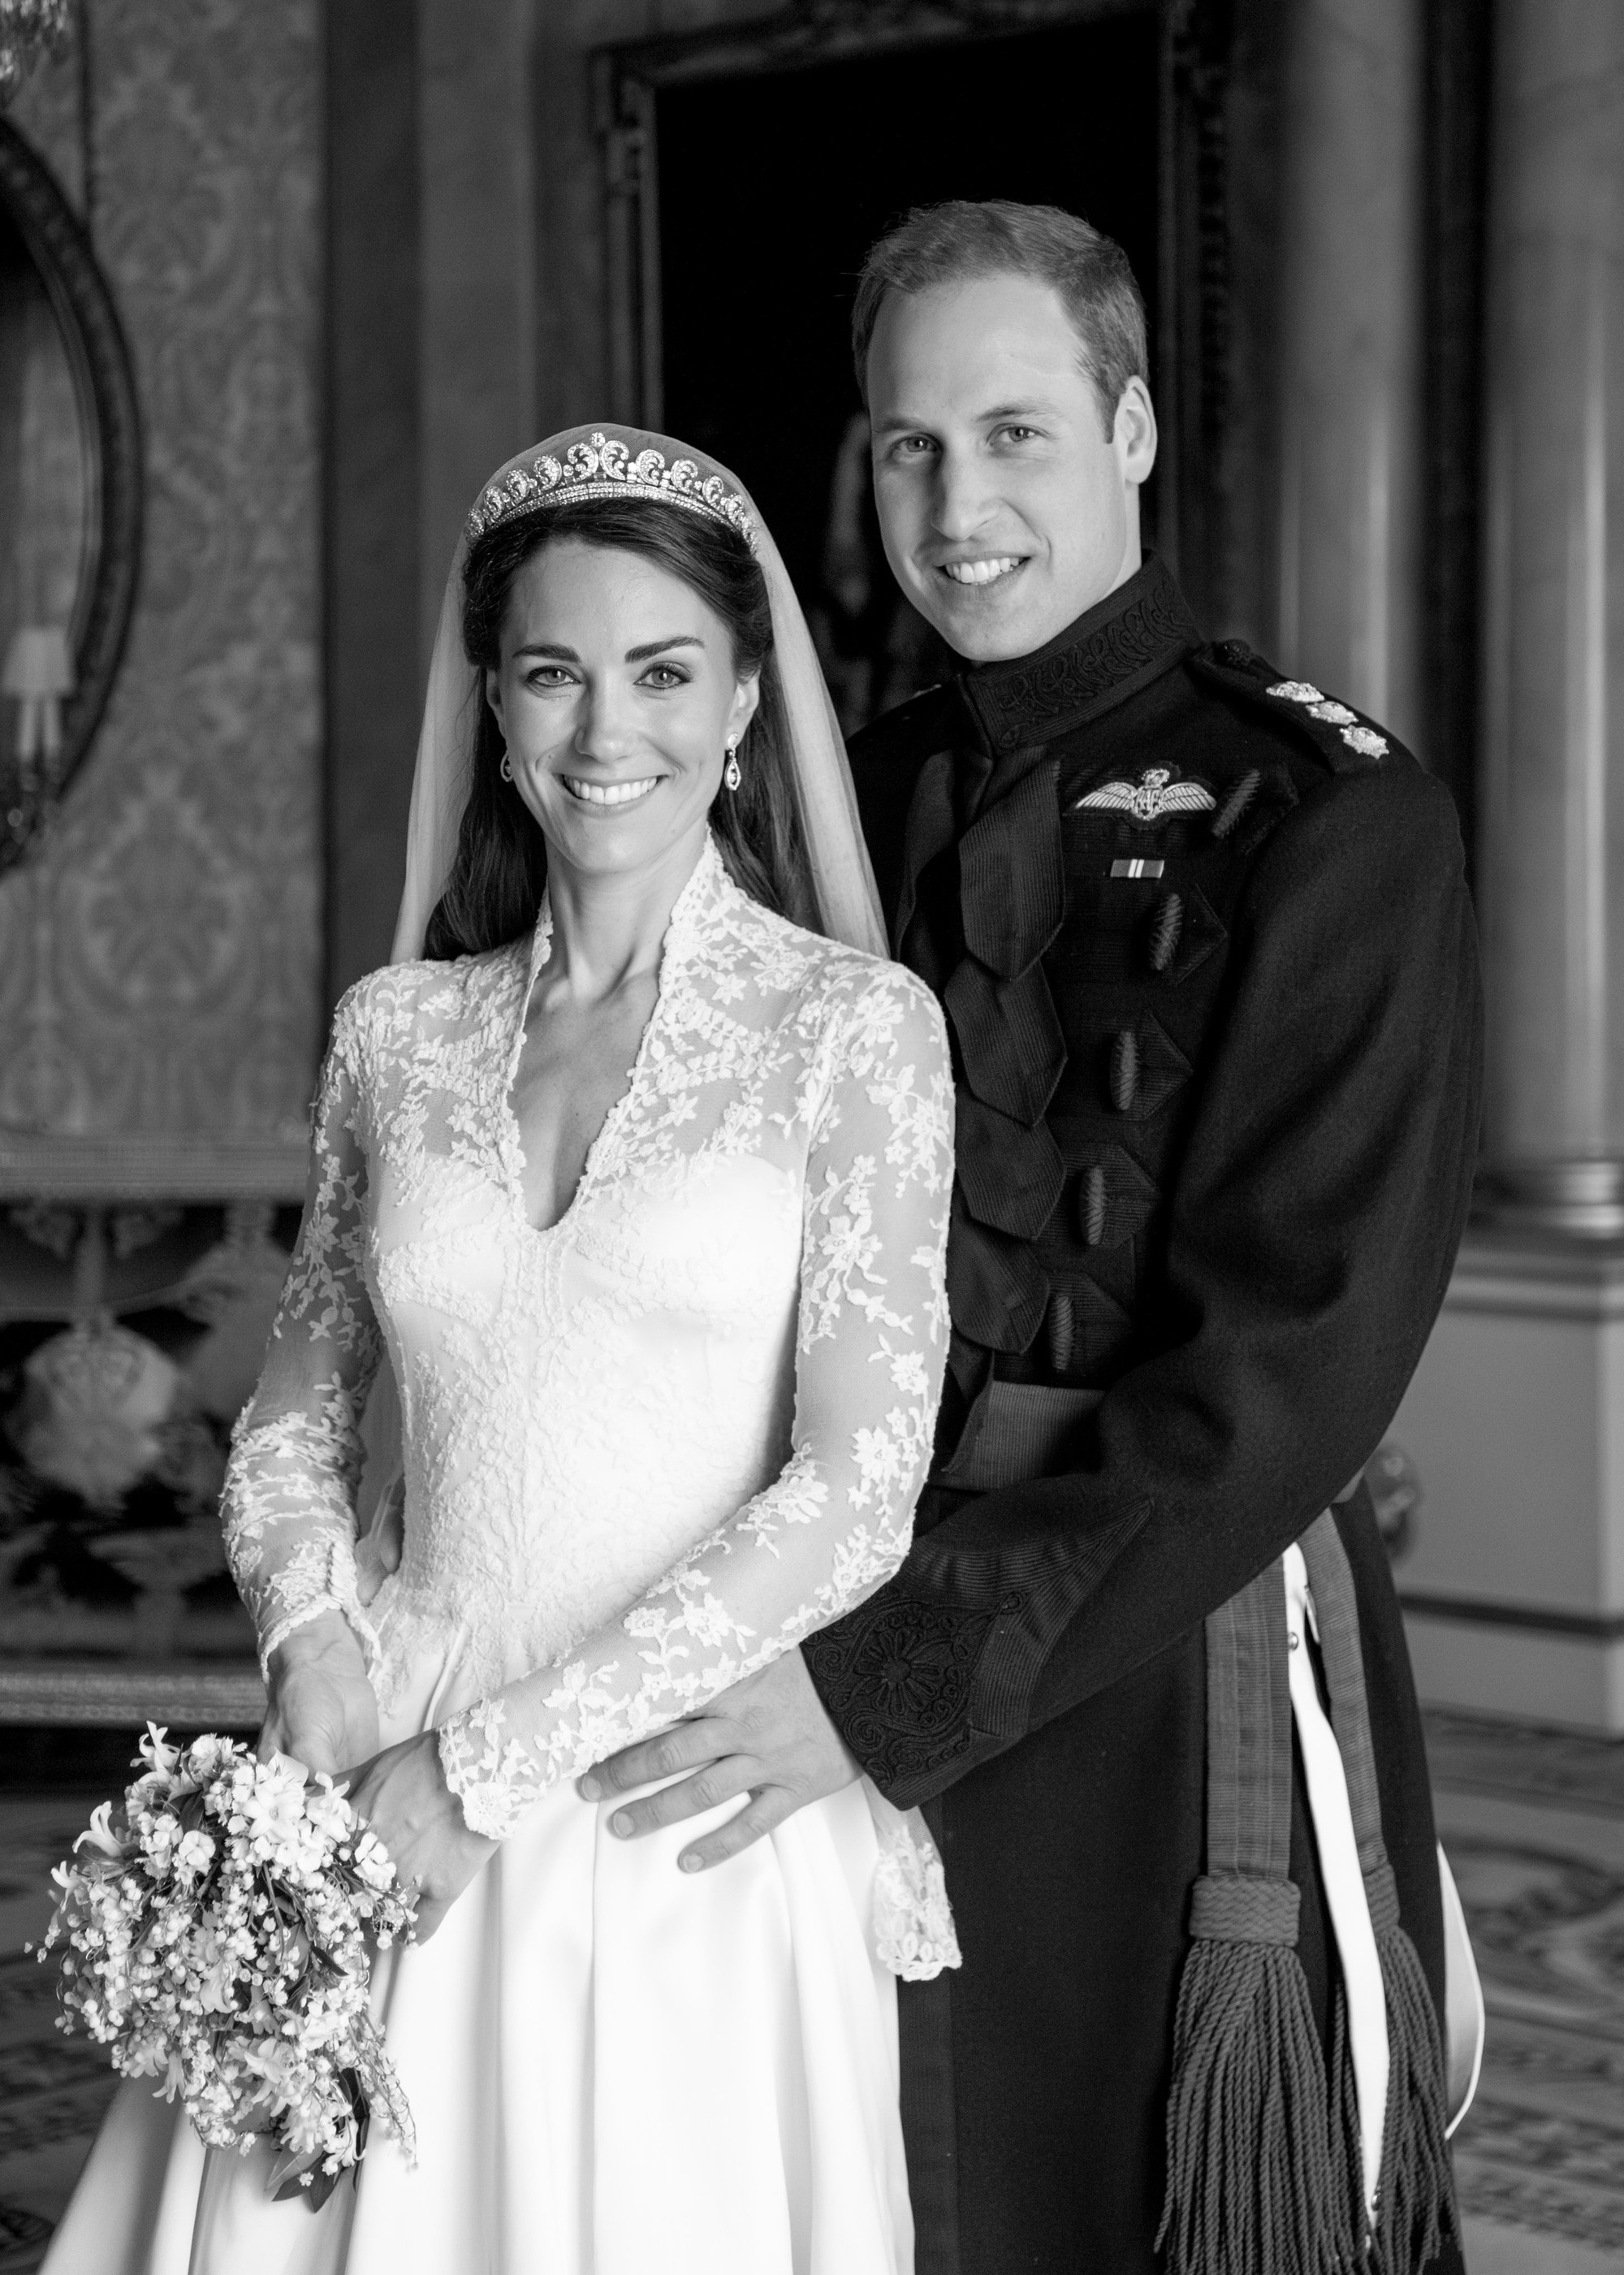 Thân vương William và Vương phi Kate kỷ niệm 13 năm ngày cưới theo cách xúc động, chia sẻ ảnh mới chưa từng công bố- Ảnh 1.